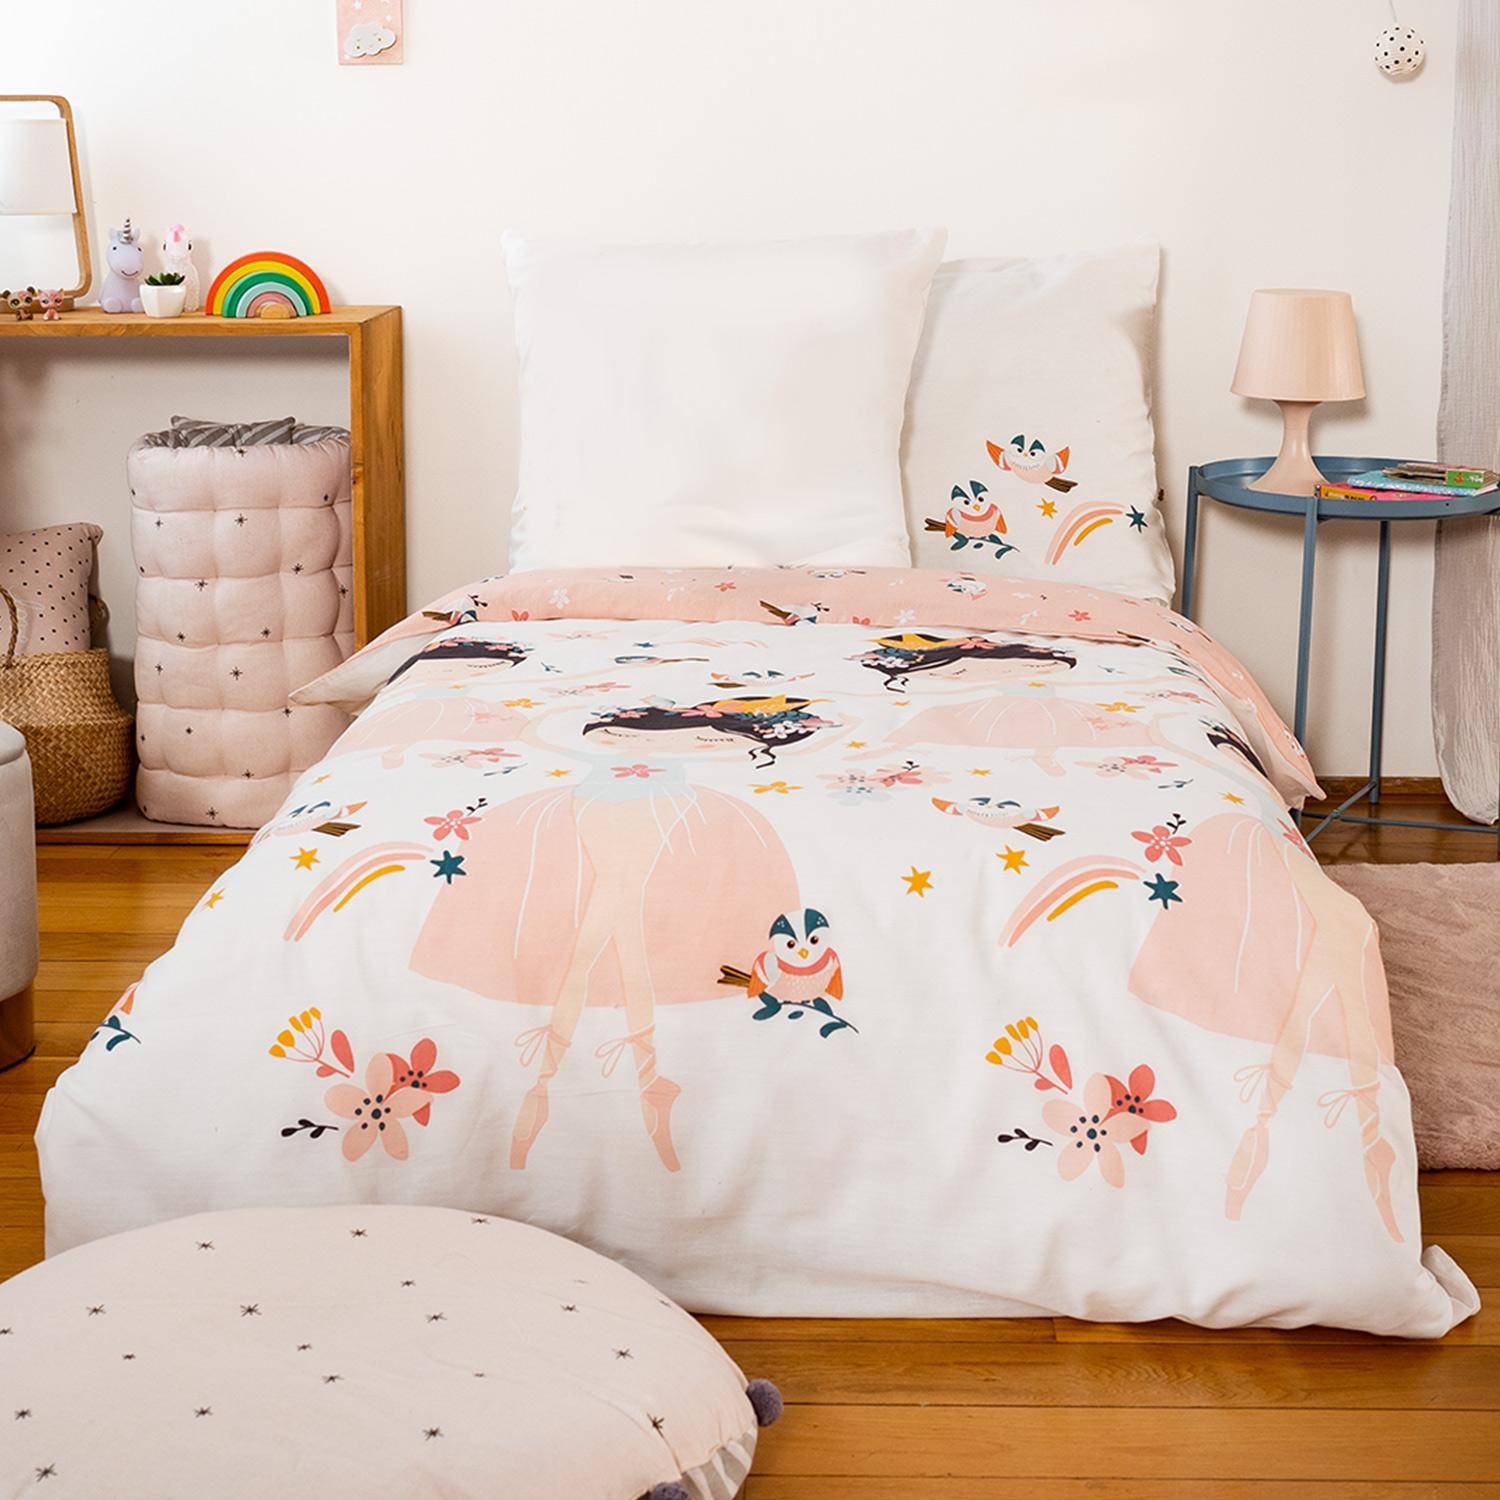 Parure de lit réversible 1 place imprimé princesse et oiseaux en polycoton, 1 housse de couette et 1 oreiller Photo1